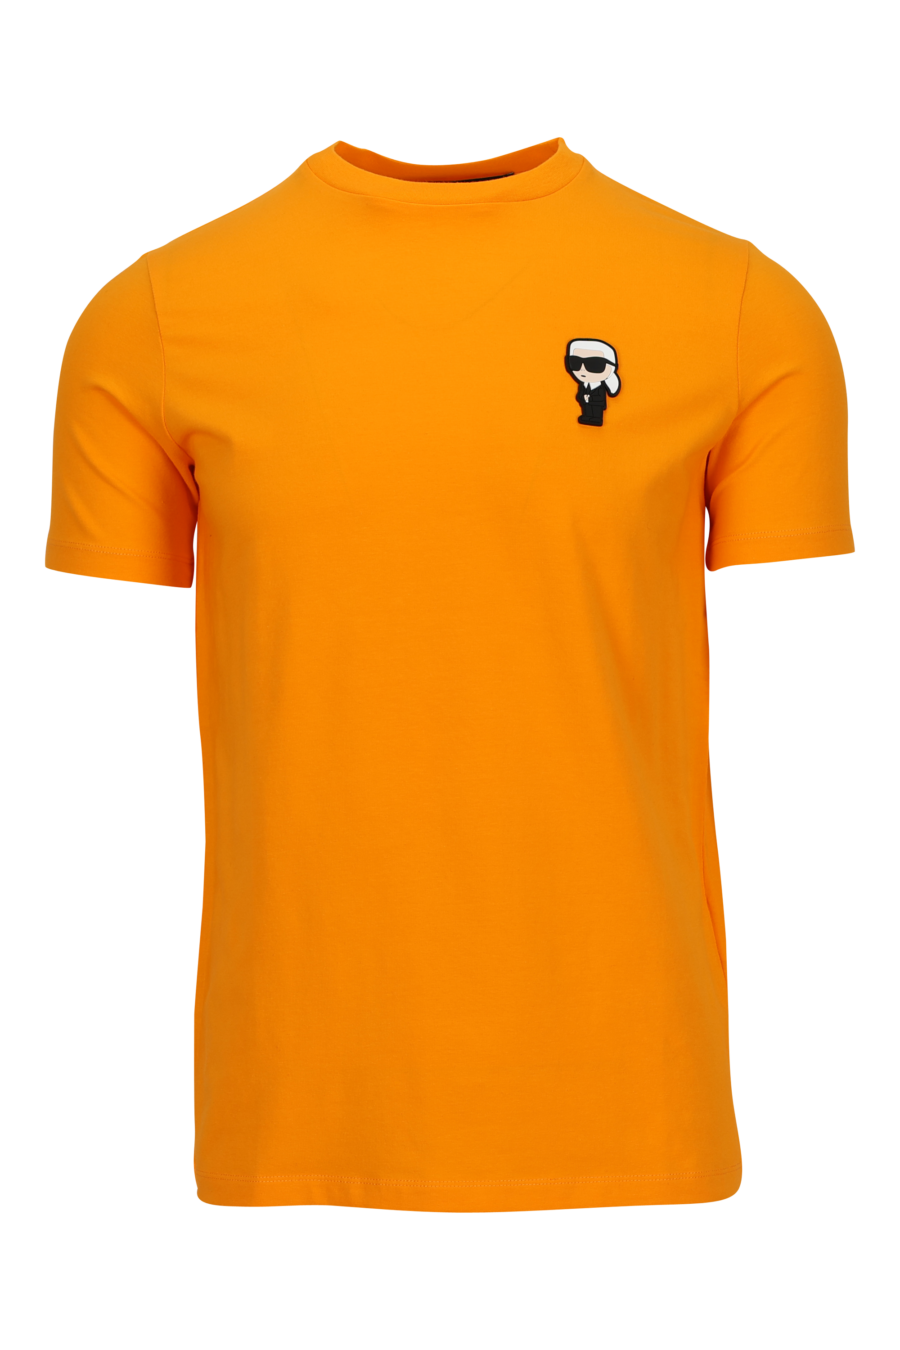 Camiseta naranja con minilogo "karl" en goma - 4062226954518